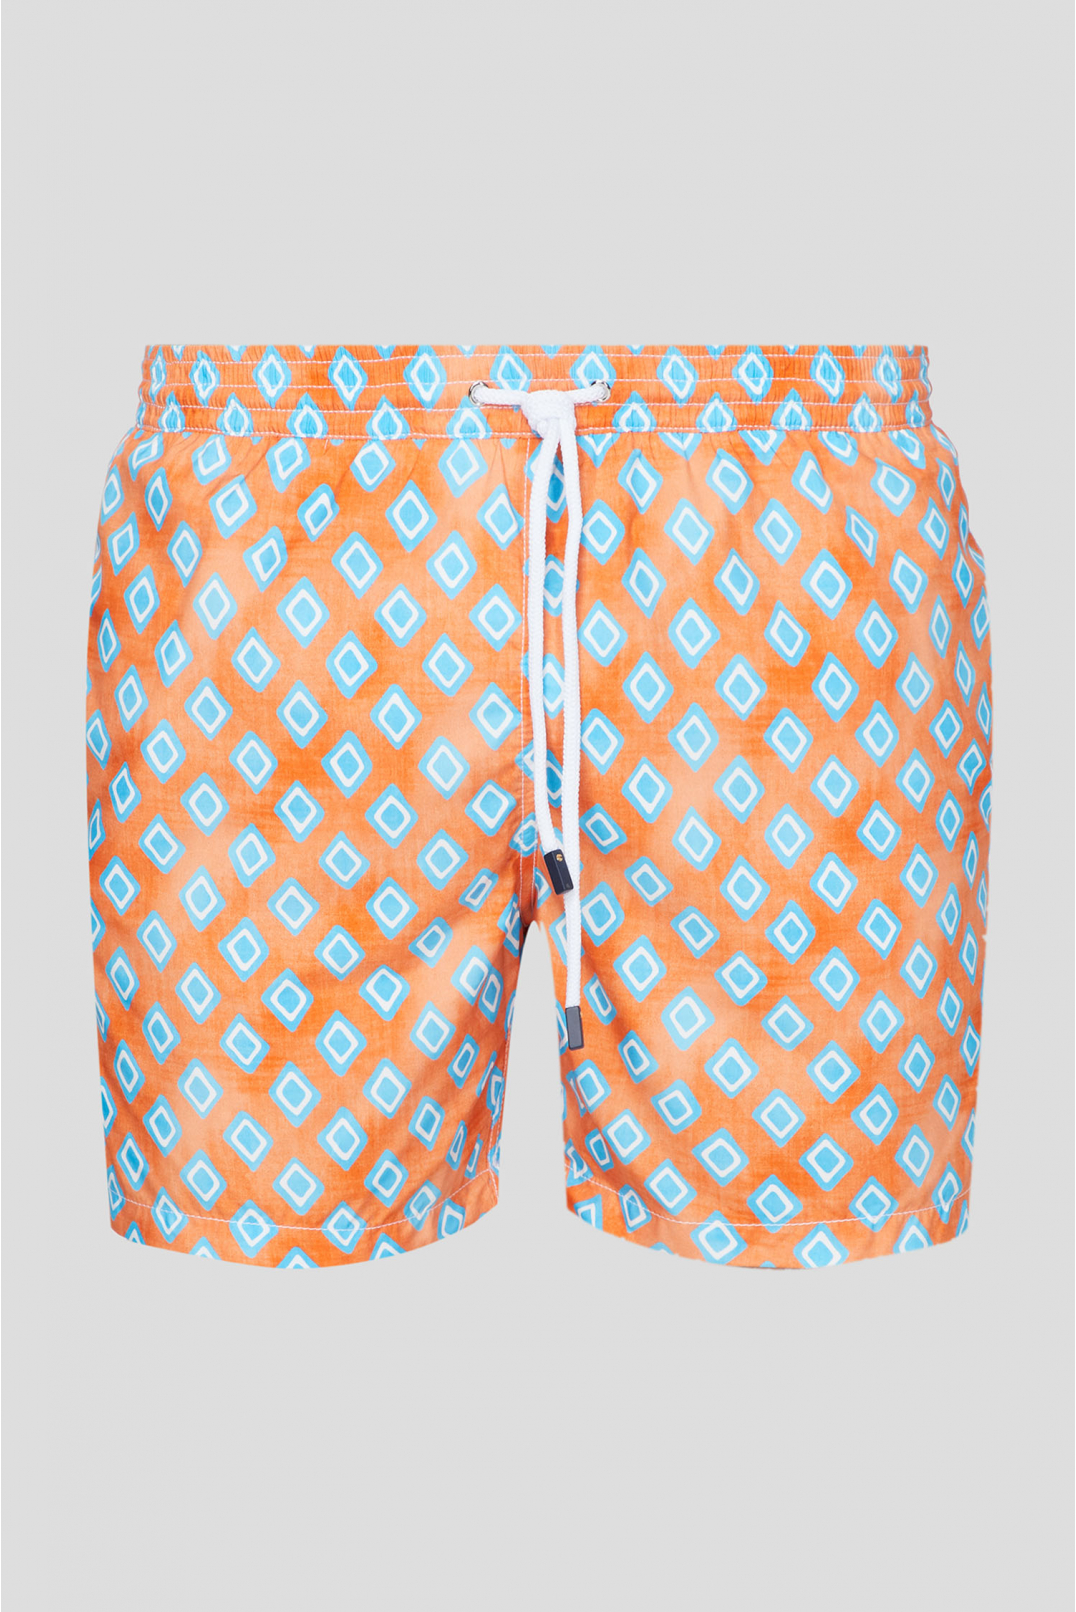 Чоловічі помаранчеві плавальні шорти з візерунком - 1